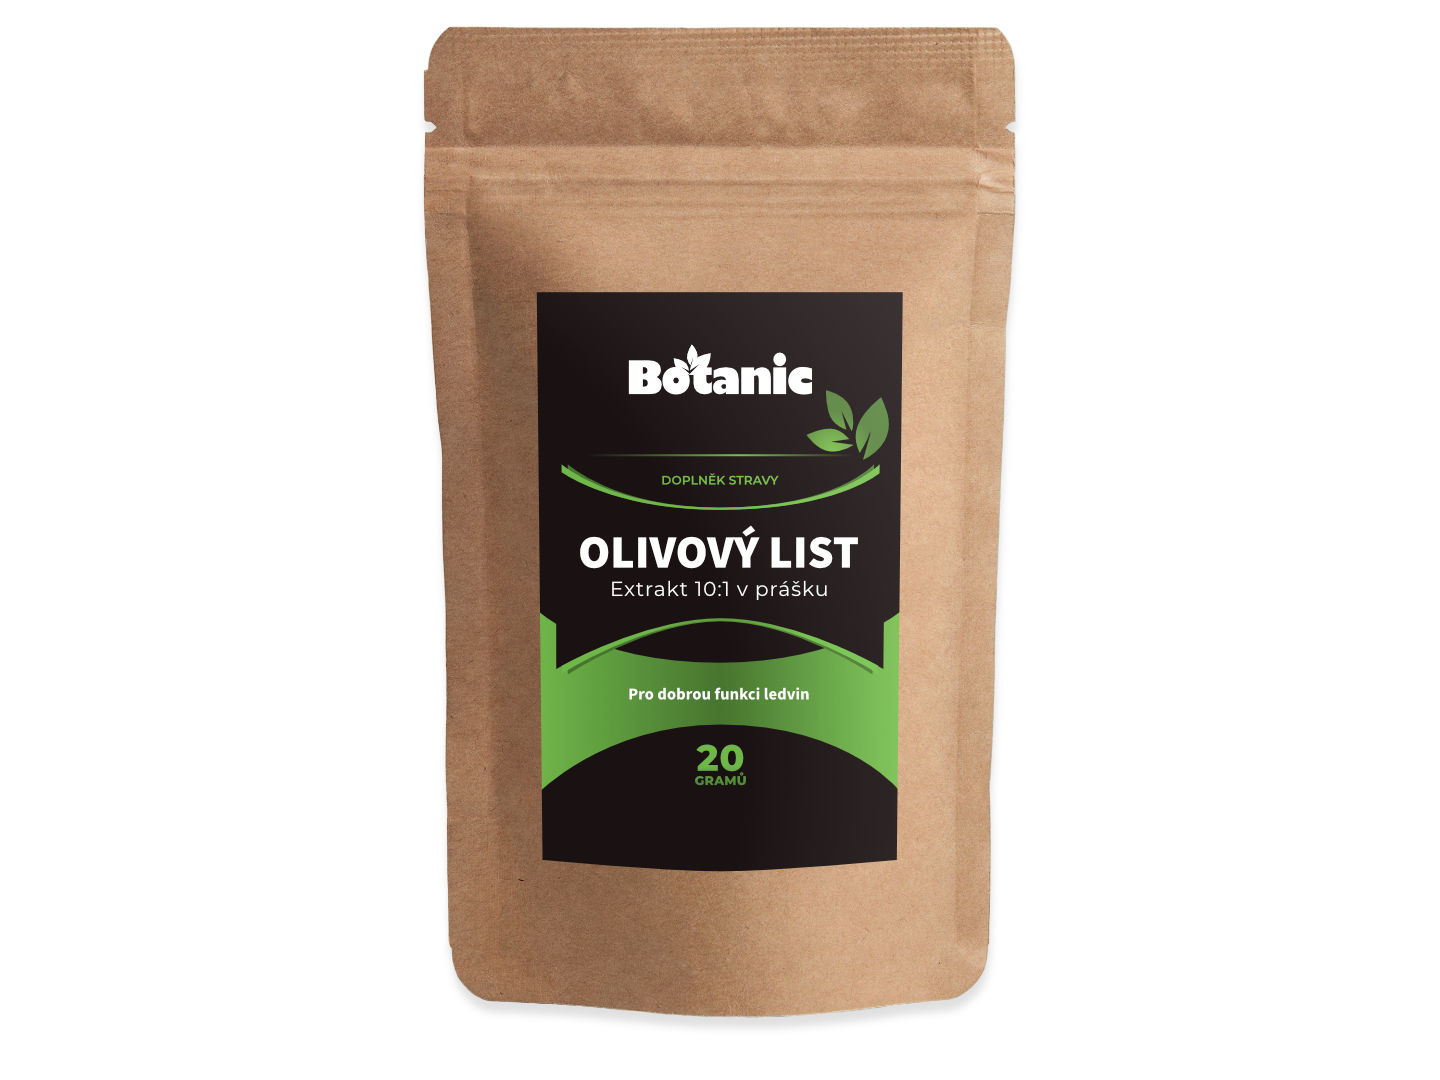 Botanic Olivový list - Extrakt 10:1 v prášku 20g